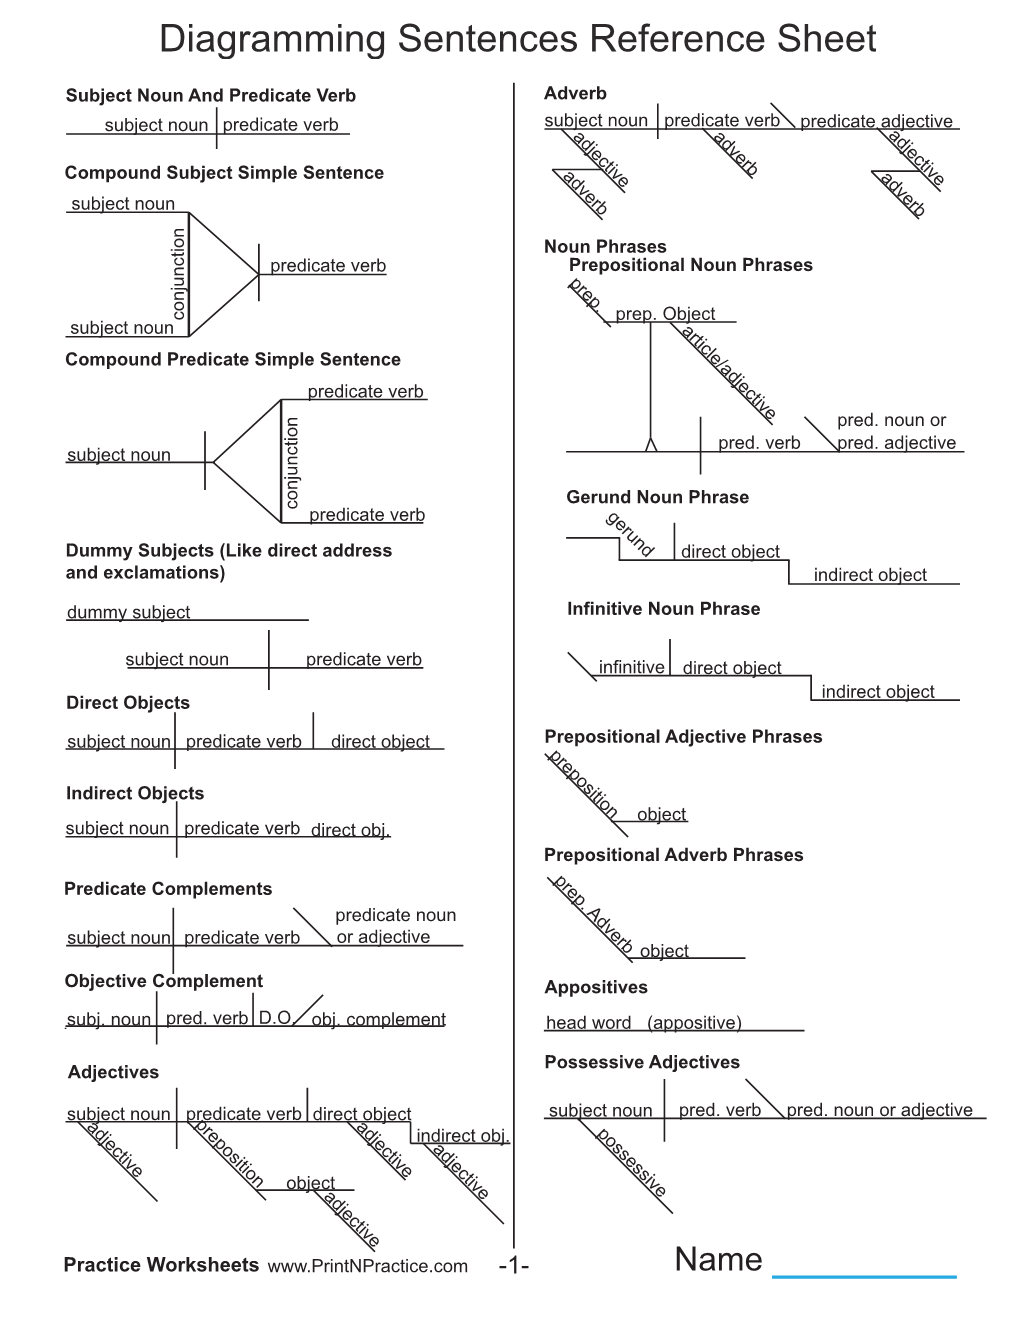 Diagramming Sentences Reference Sheet